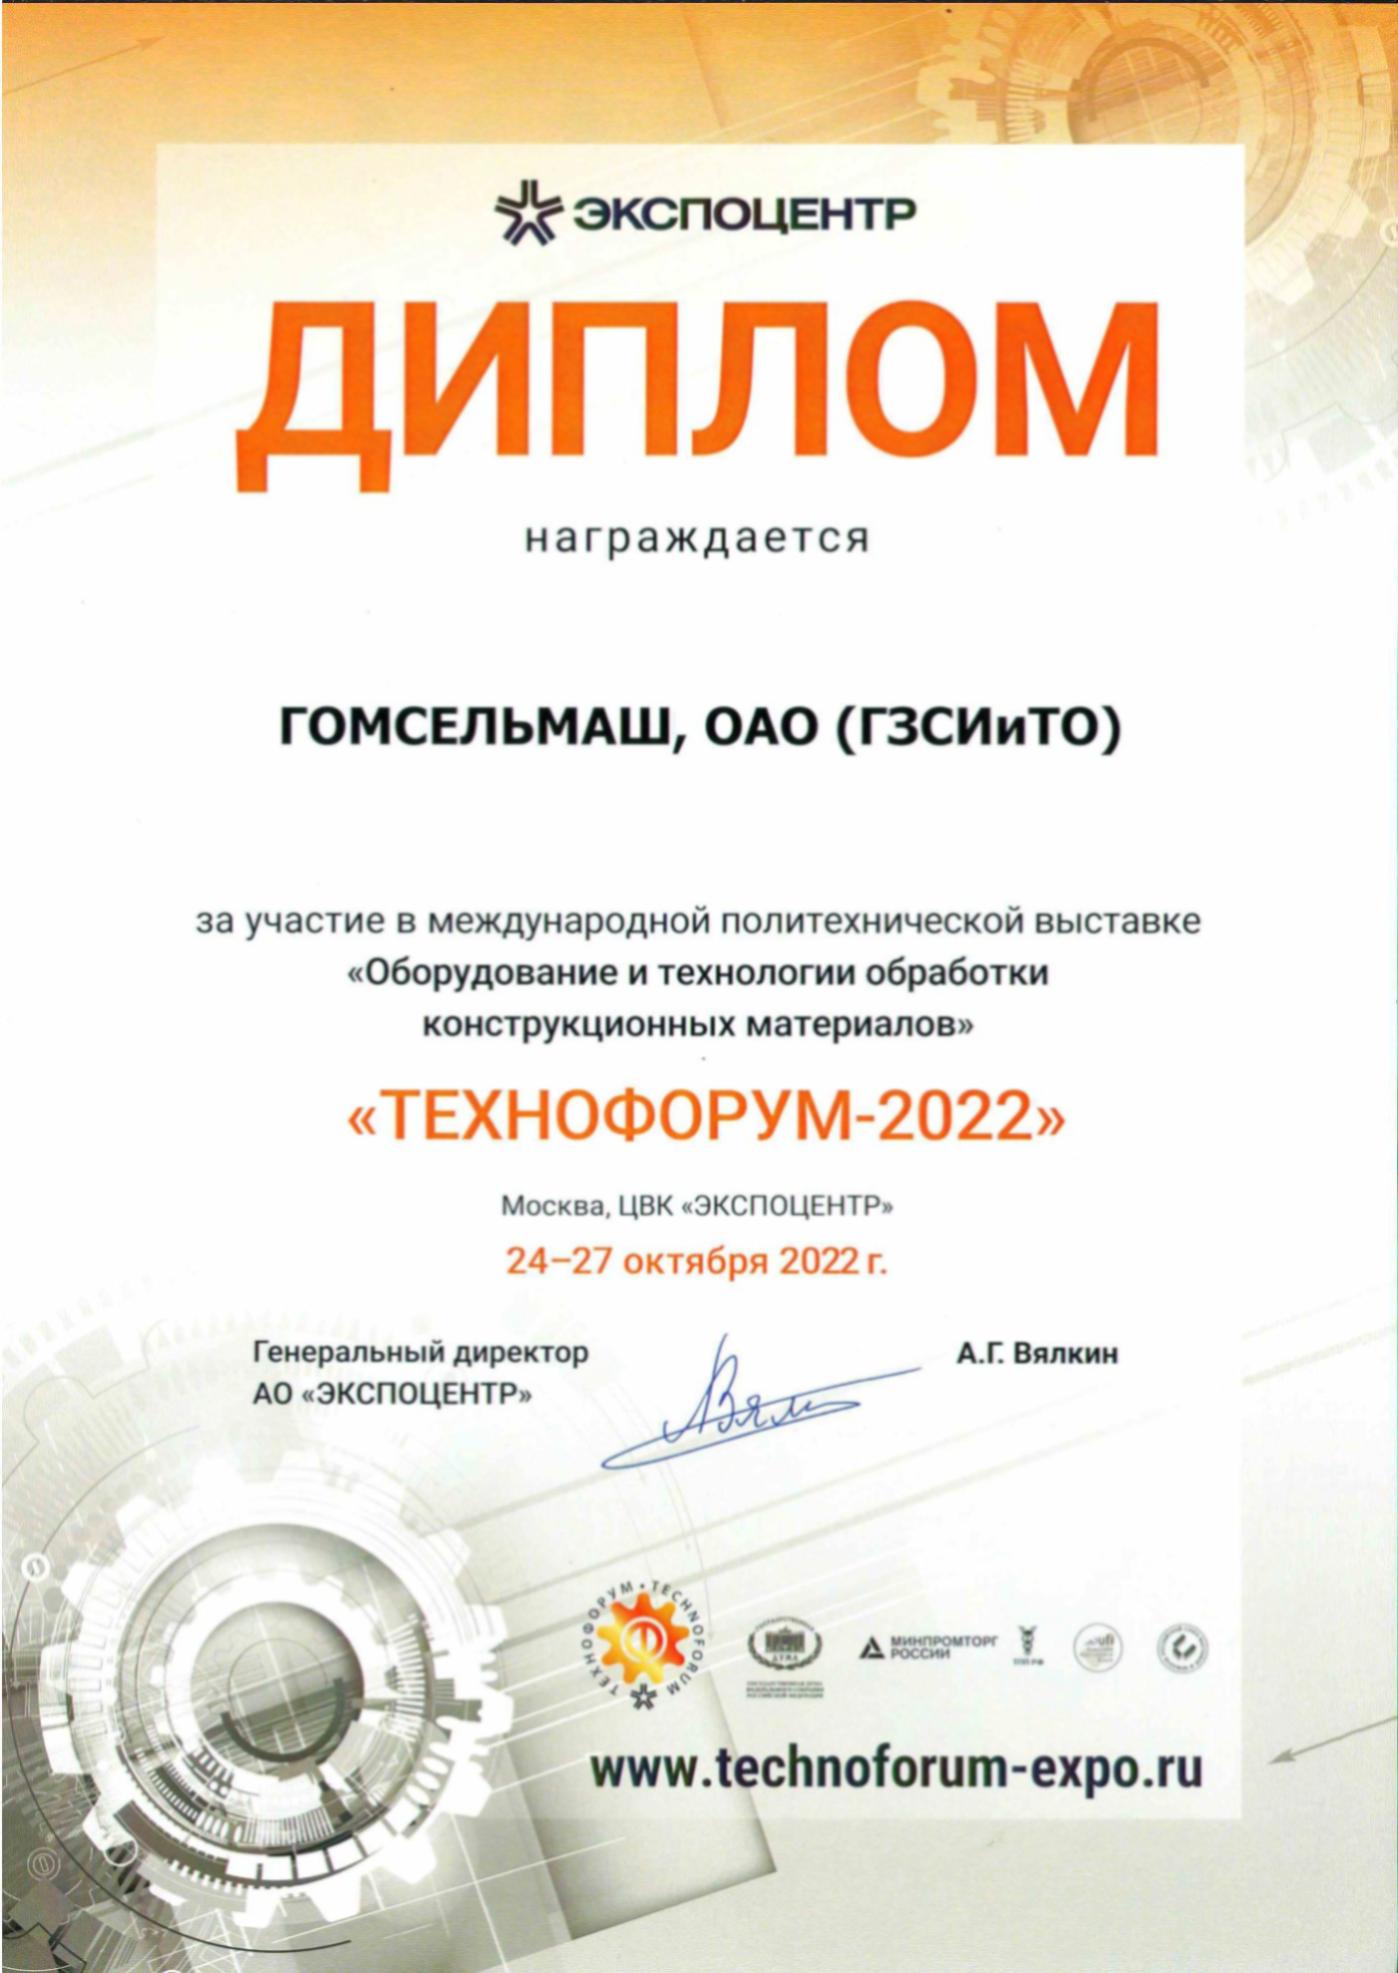 Филиал ГЗСИиТО награжден дипломом за участие в выставке «ТЕХНОФОРУМ-2022»